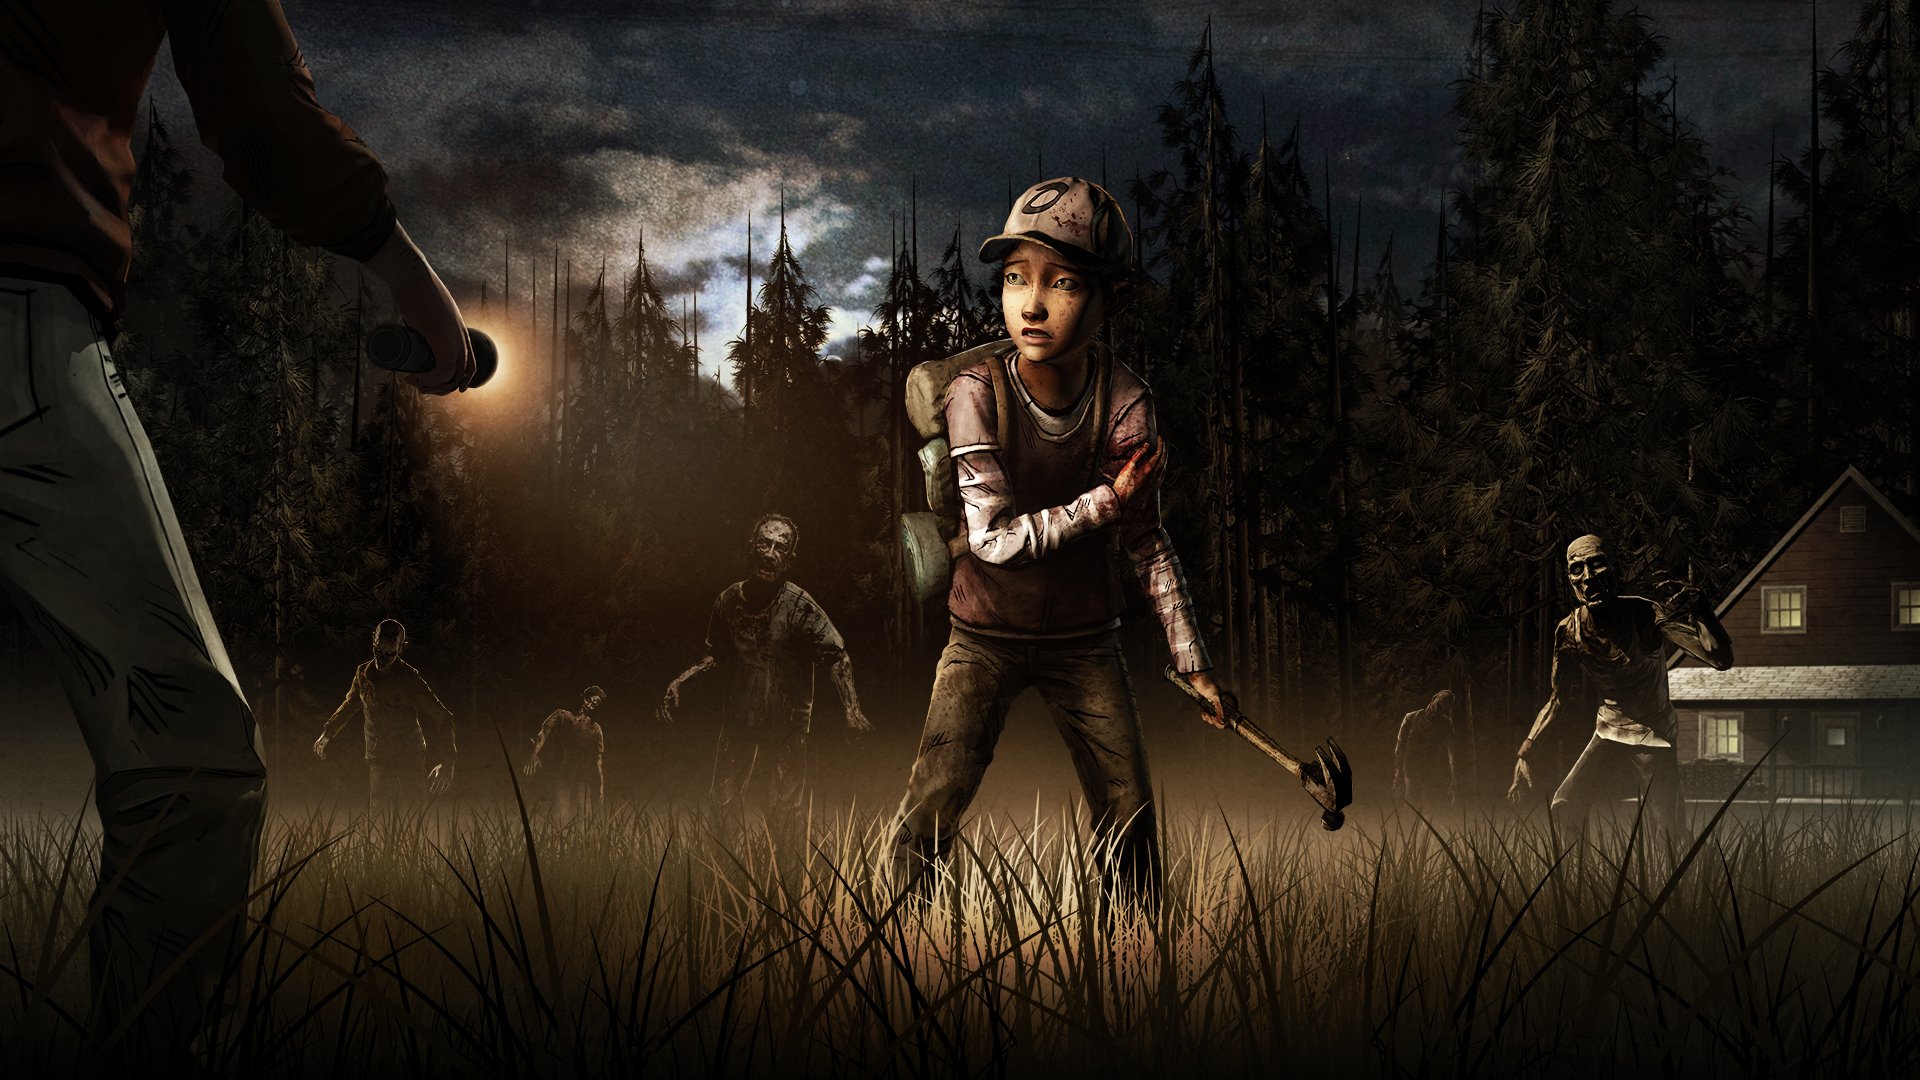 The Walking Dead Telltale Wallpapers